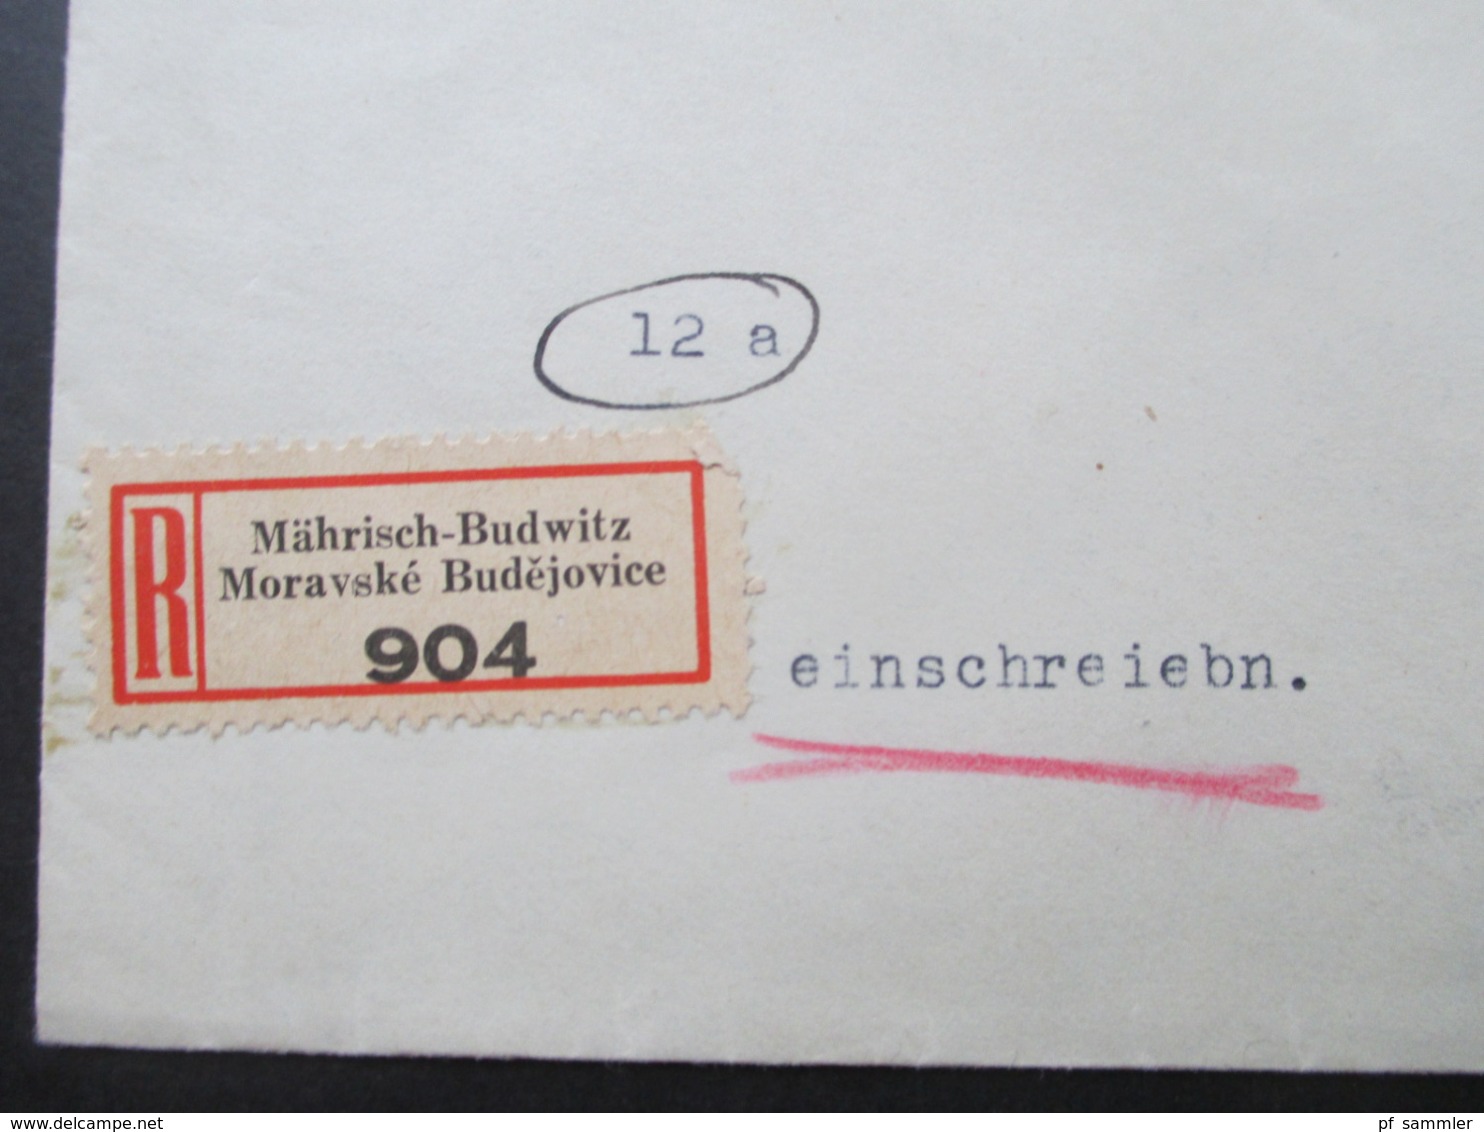 Böhmen Und Mähren Einschreiben 2 Sprachiger E Zettel Mährisch Budwitz Moravske Budejovice - Wien Freimarken Adoif Hitler - Storia Postale